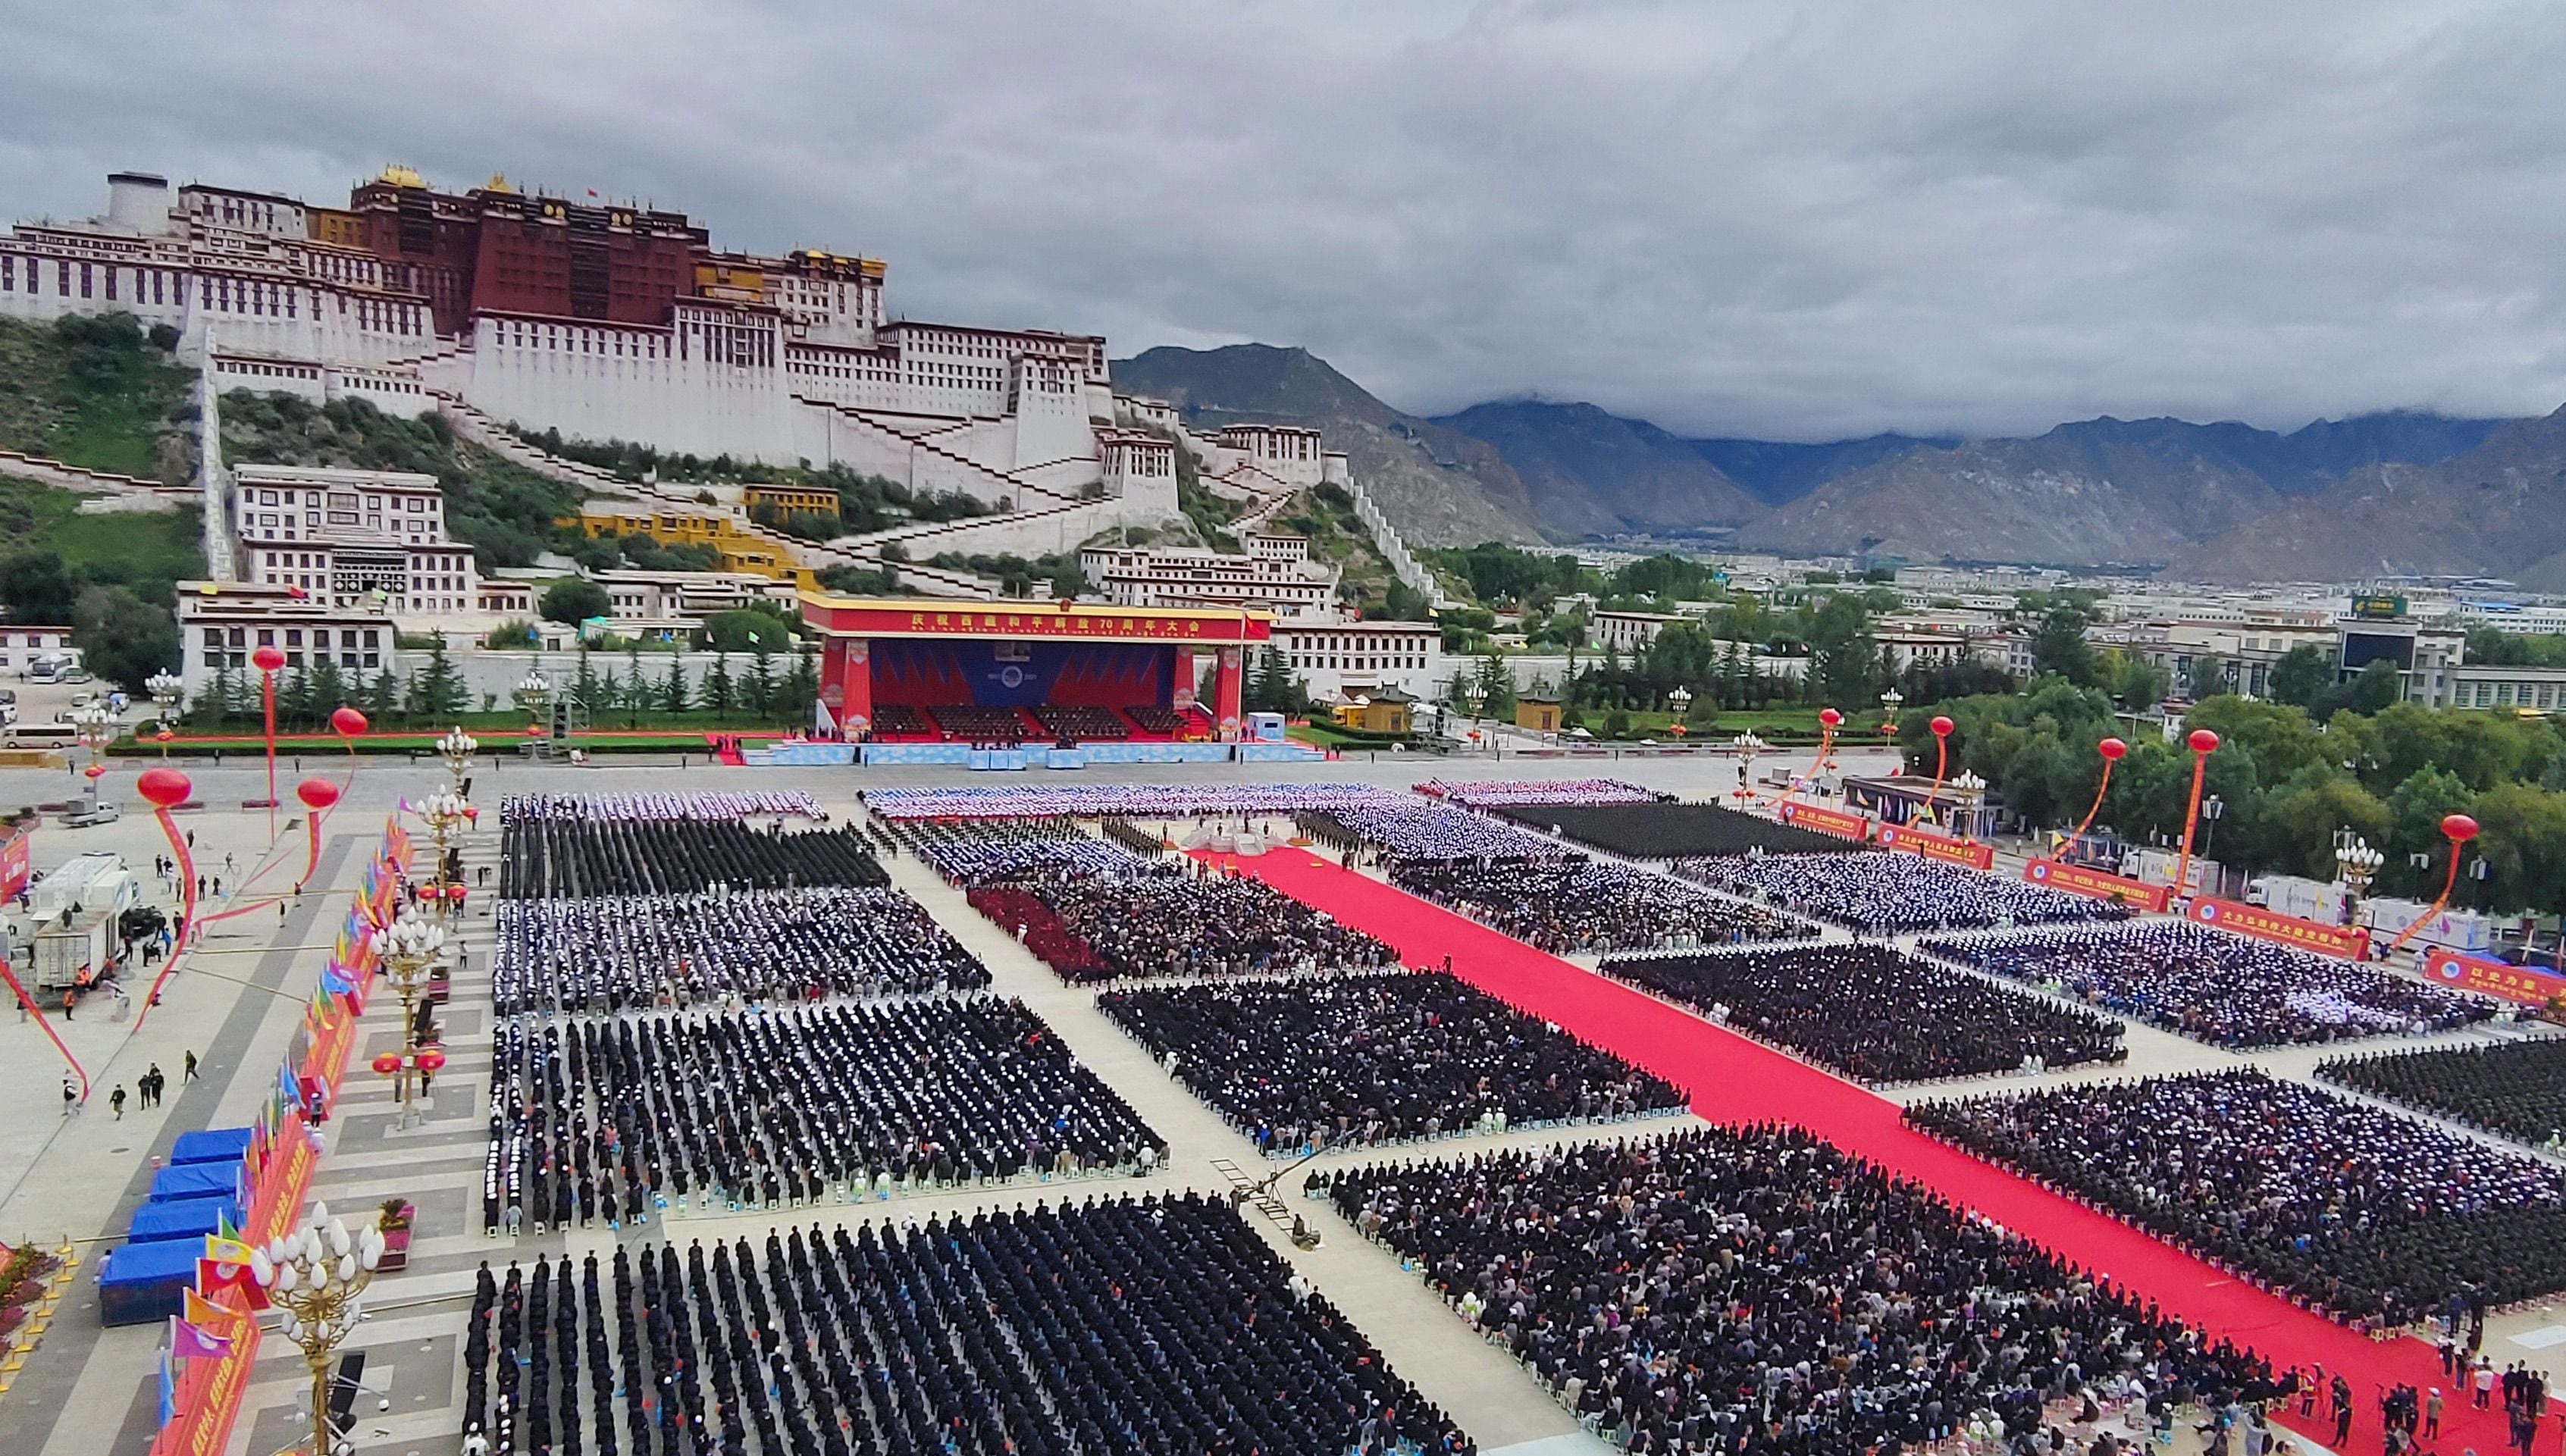 (210819) -- LHASA, 19 agosto, 2021 (Xinhua) -- Una gran reunión se lleva a cabo para conmemorar el 70° aniversario de la liberación pacífica del Tíbet en la plaza del Palacio de Potala, en Lhasa, en la región autónoma del Tíbet, en el suroeste de China, el 19 de agosto de 2021. Más de 20.000 personas de diversos grupos étnicos asistieron al evento celebrado en Lhasa. (Xinhua/Sun Ruibo) (ah) (da) (vf)